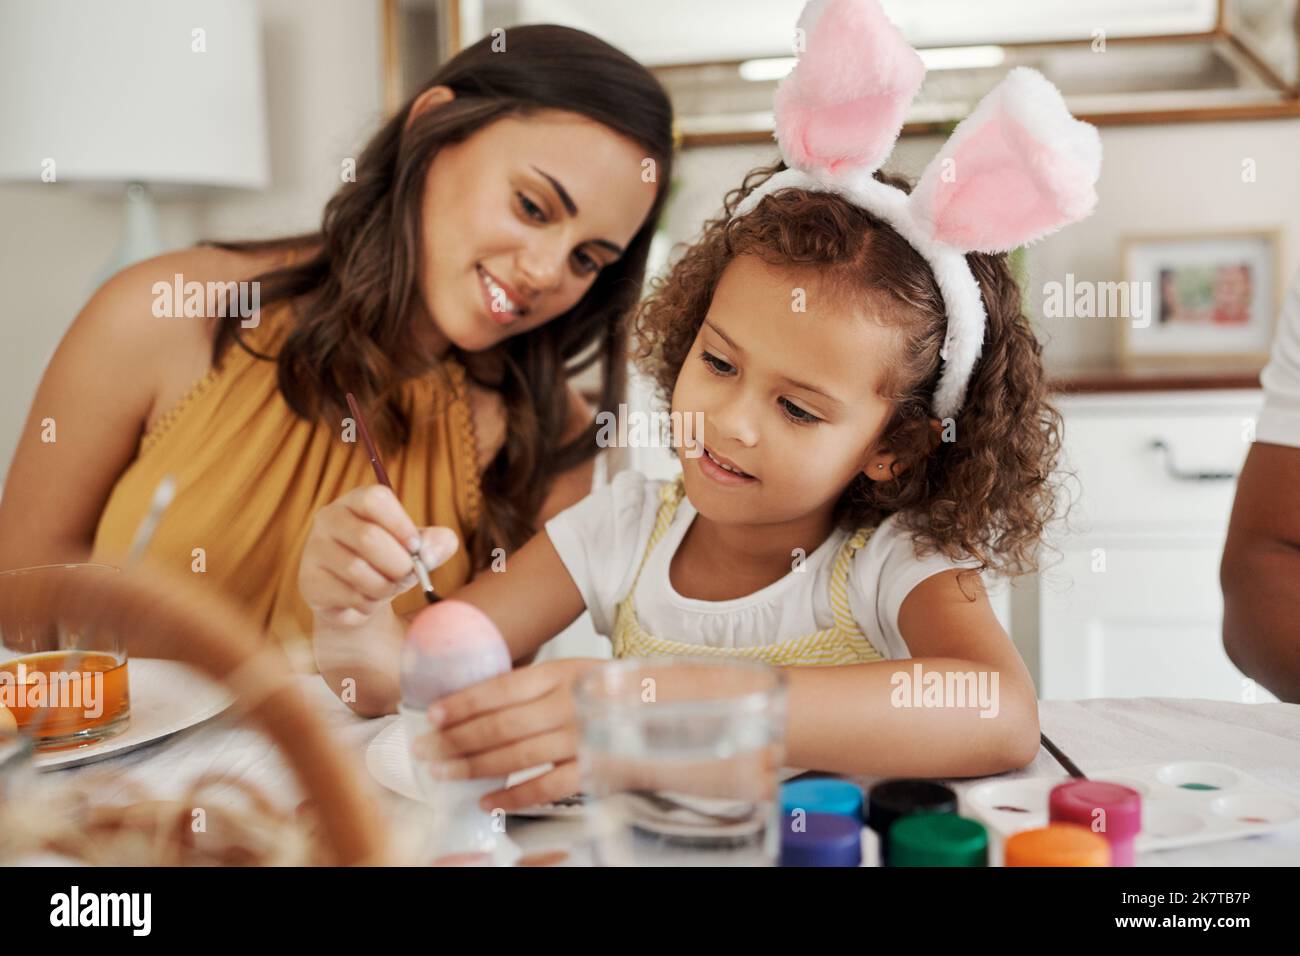 Welche Farben werden Sie verwenden? Eine Mutter malt mit ihrer Tochter Ostereier. Stockfoto